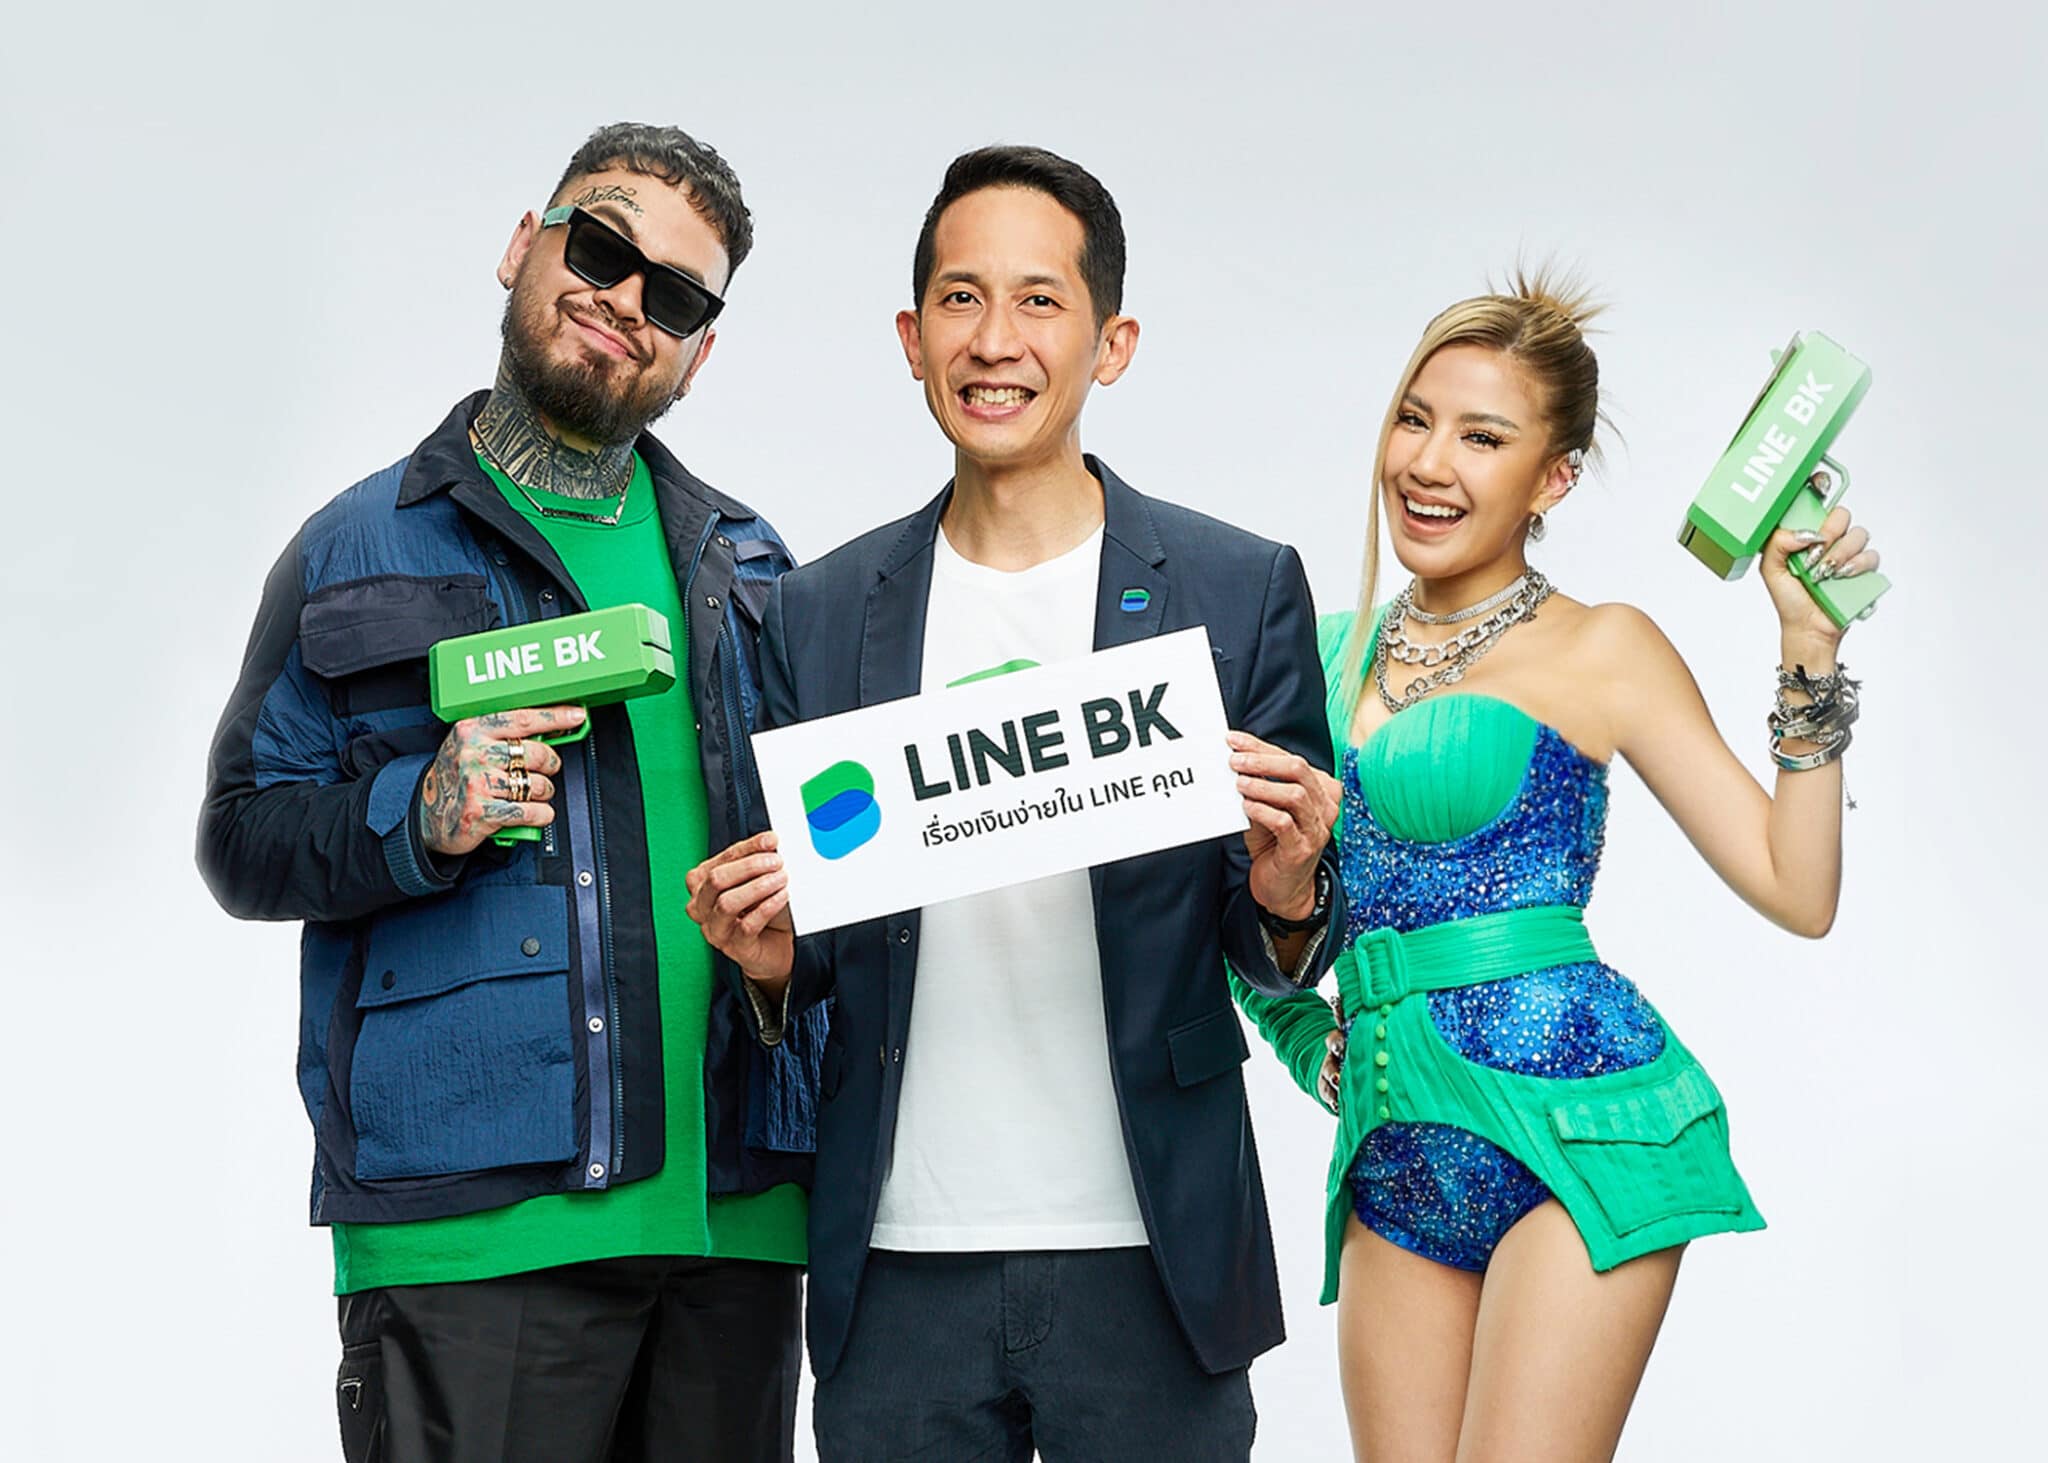 ภาพประกอบข่าว - LINE BK ปักธงรุกตลาดสินเชื่อเต็มสูบ ลุยแคมเปญการตลาดผ่านเสียงเพลง 01